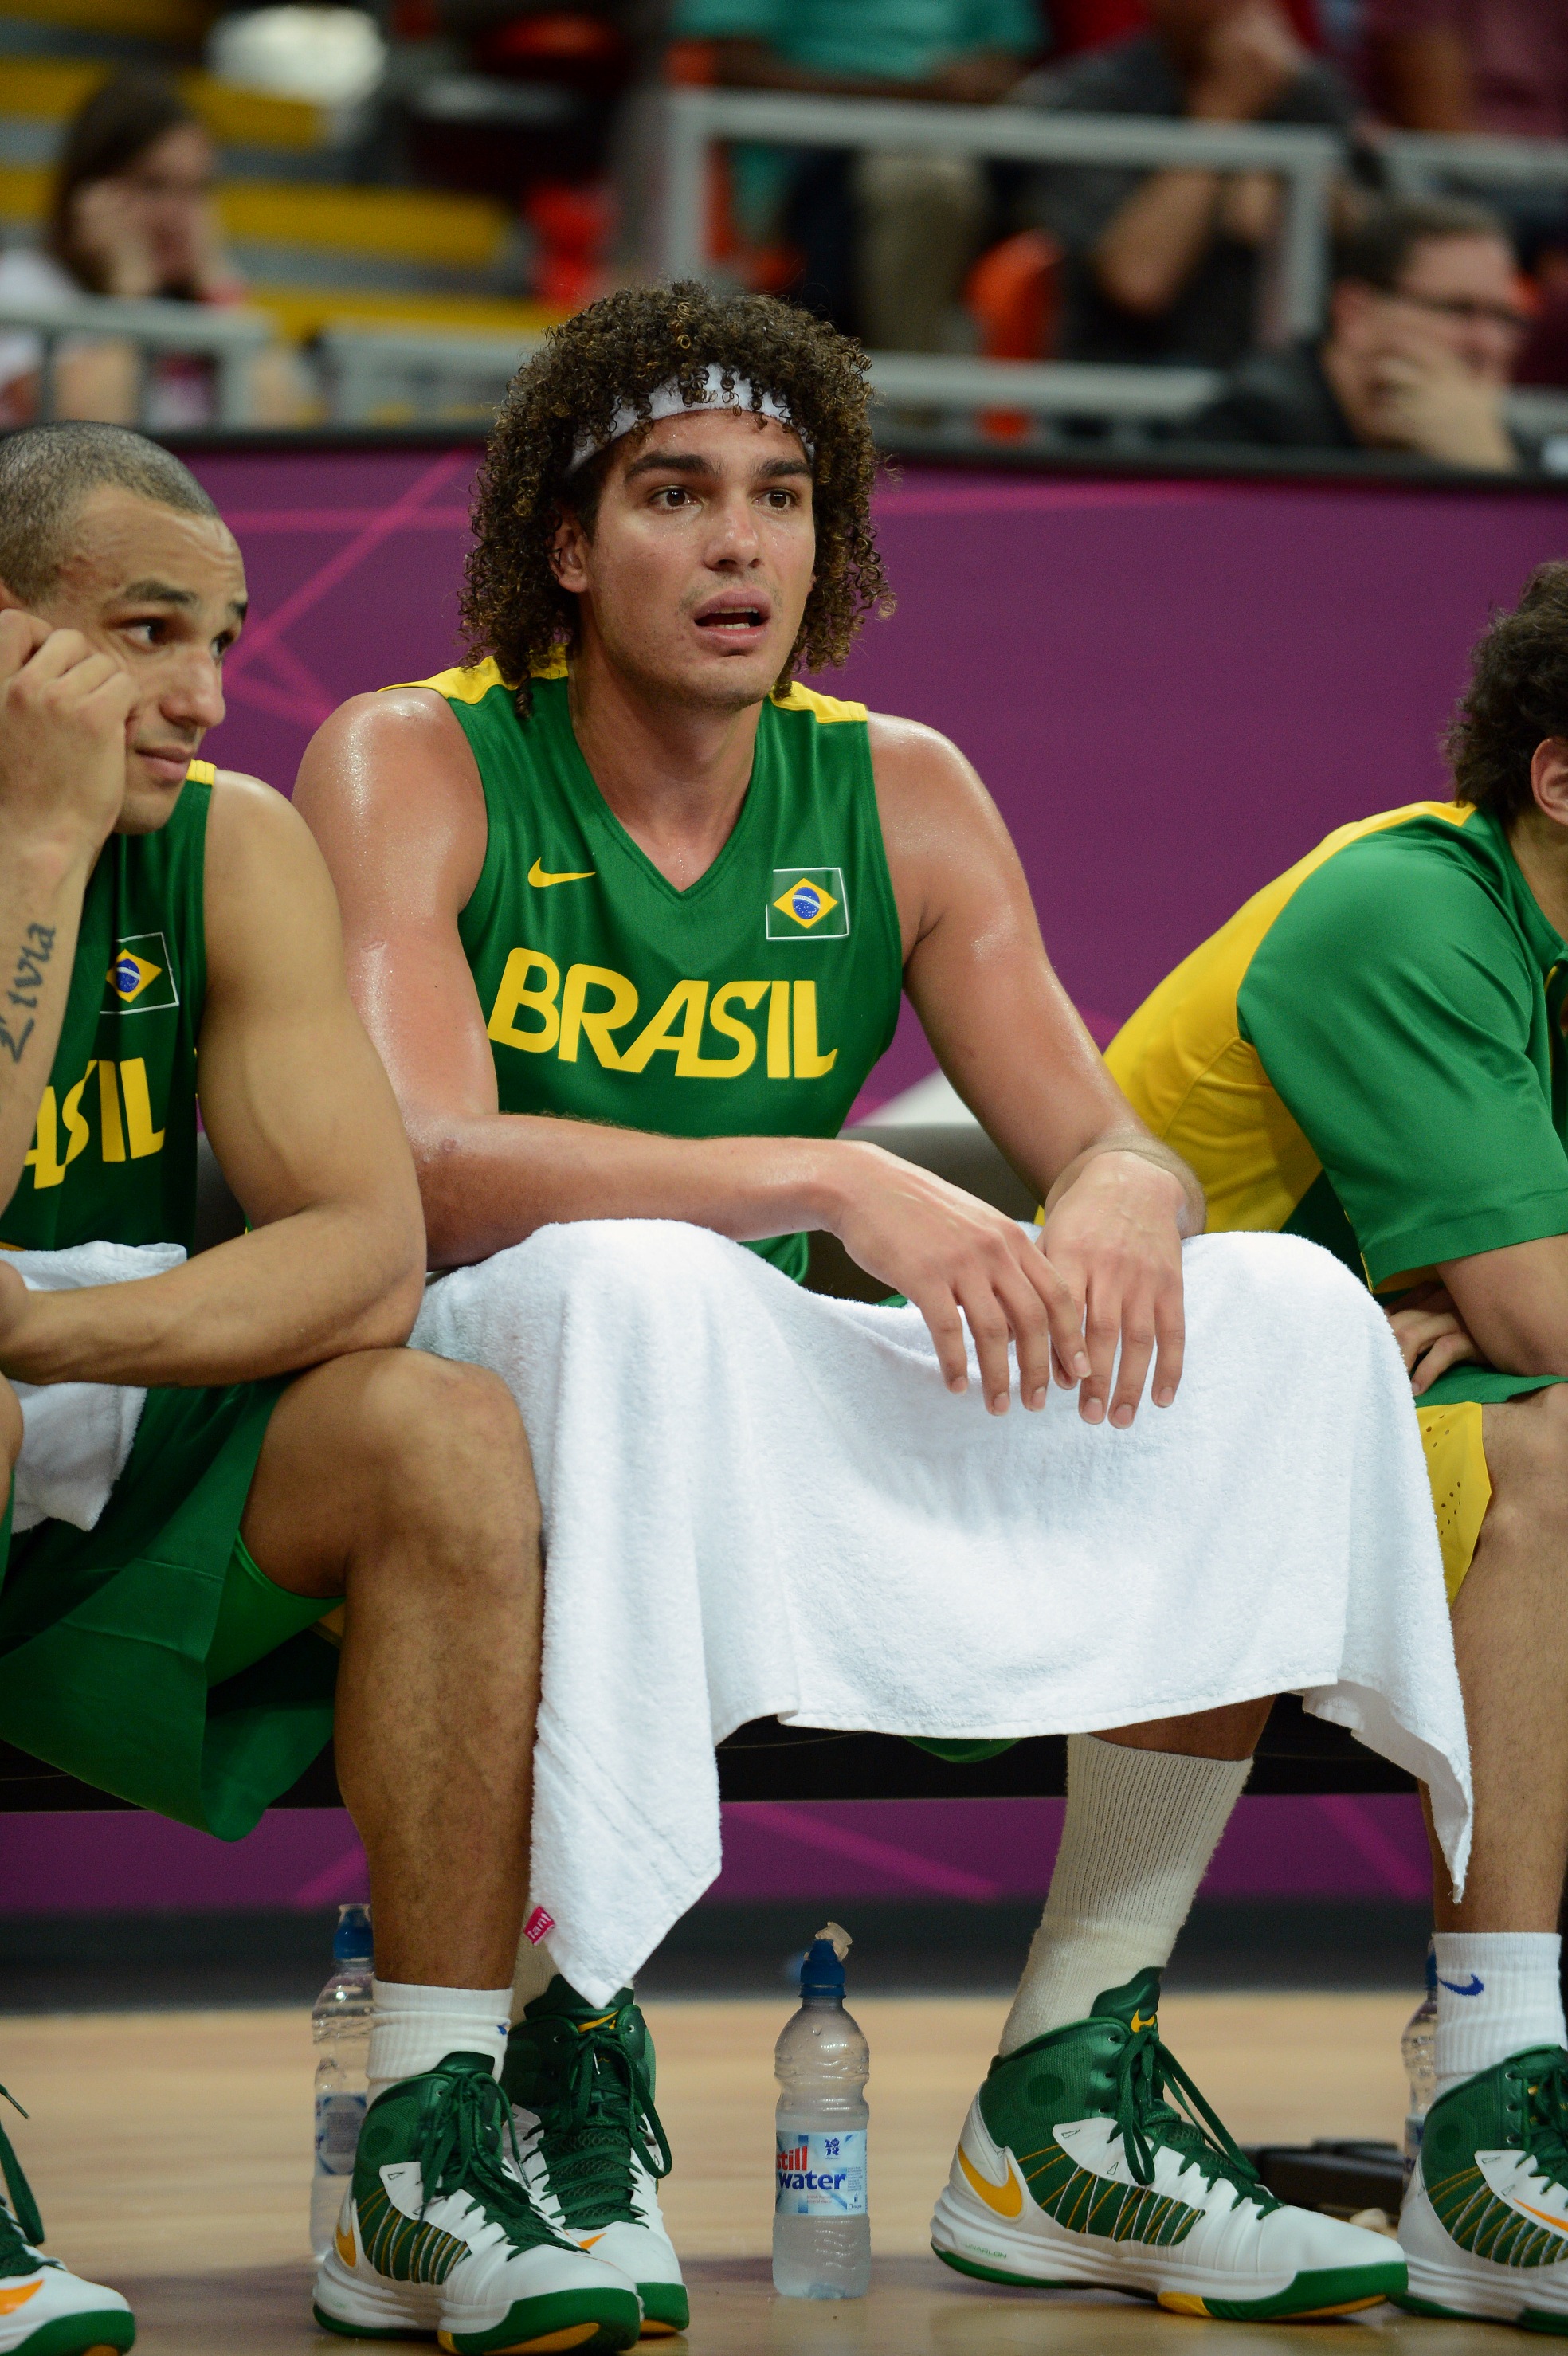 Exames revelam hérnia de disco e Anderson Varejão está fora dos Jogos Olímpicos Rio-2016